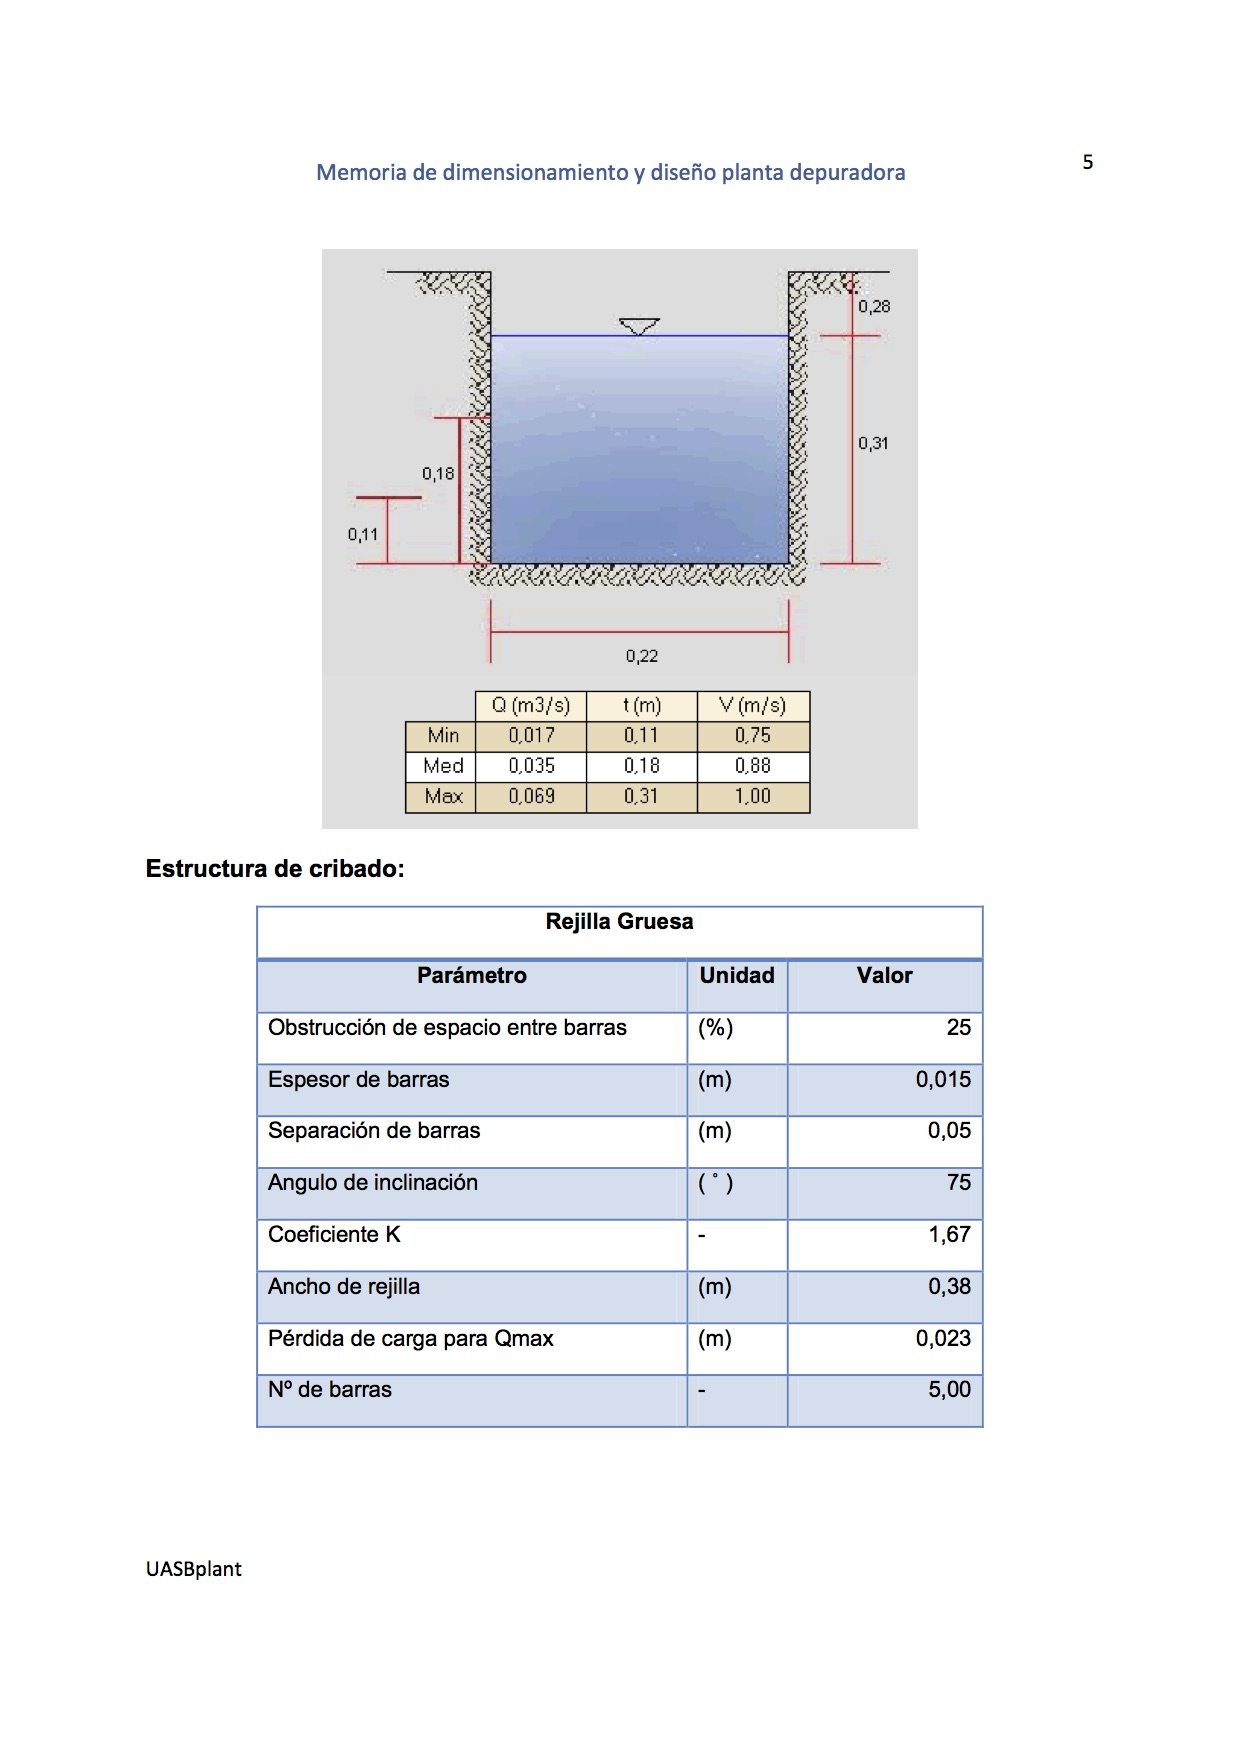 Software reactores UASB - biofiltros - clarificadores